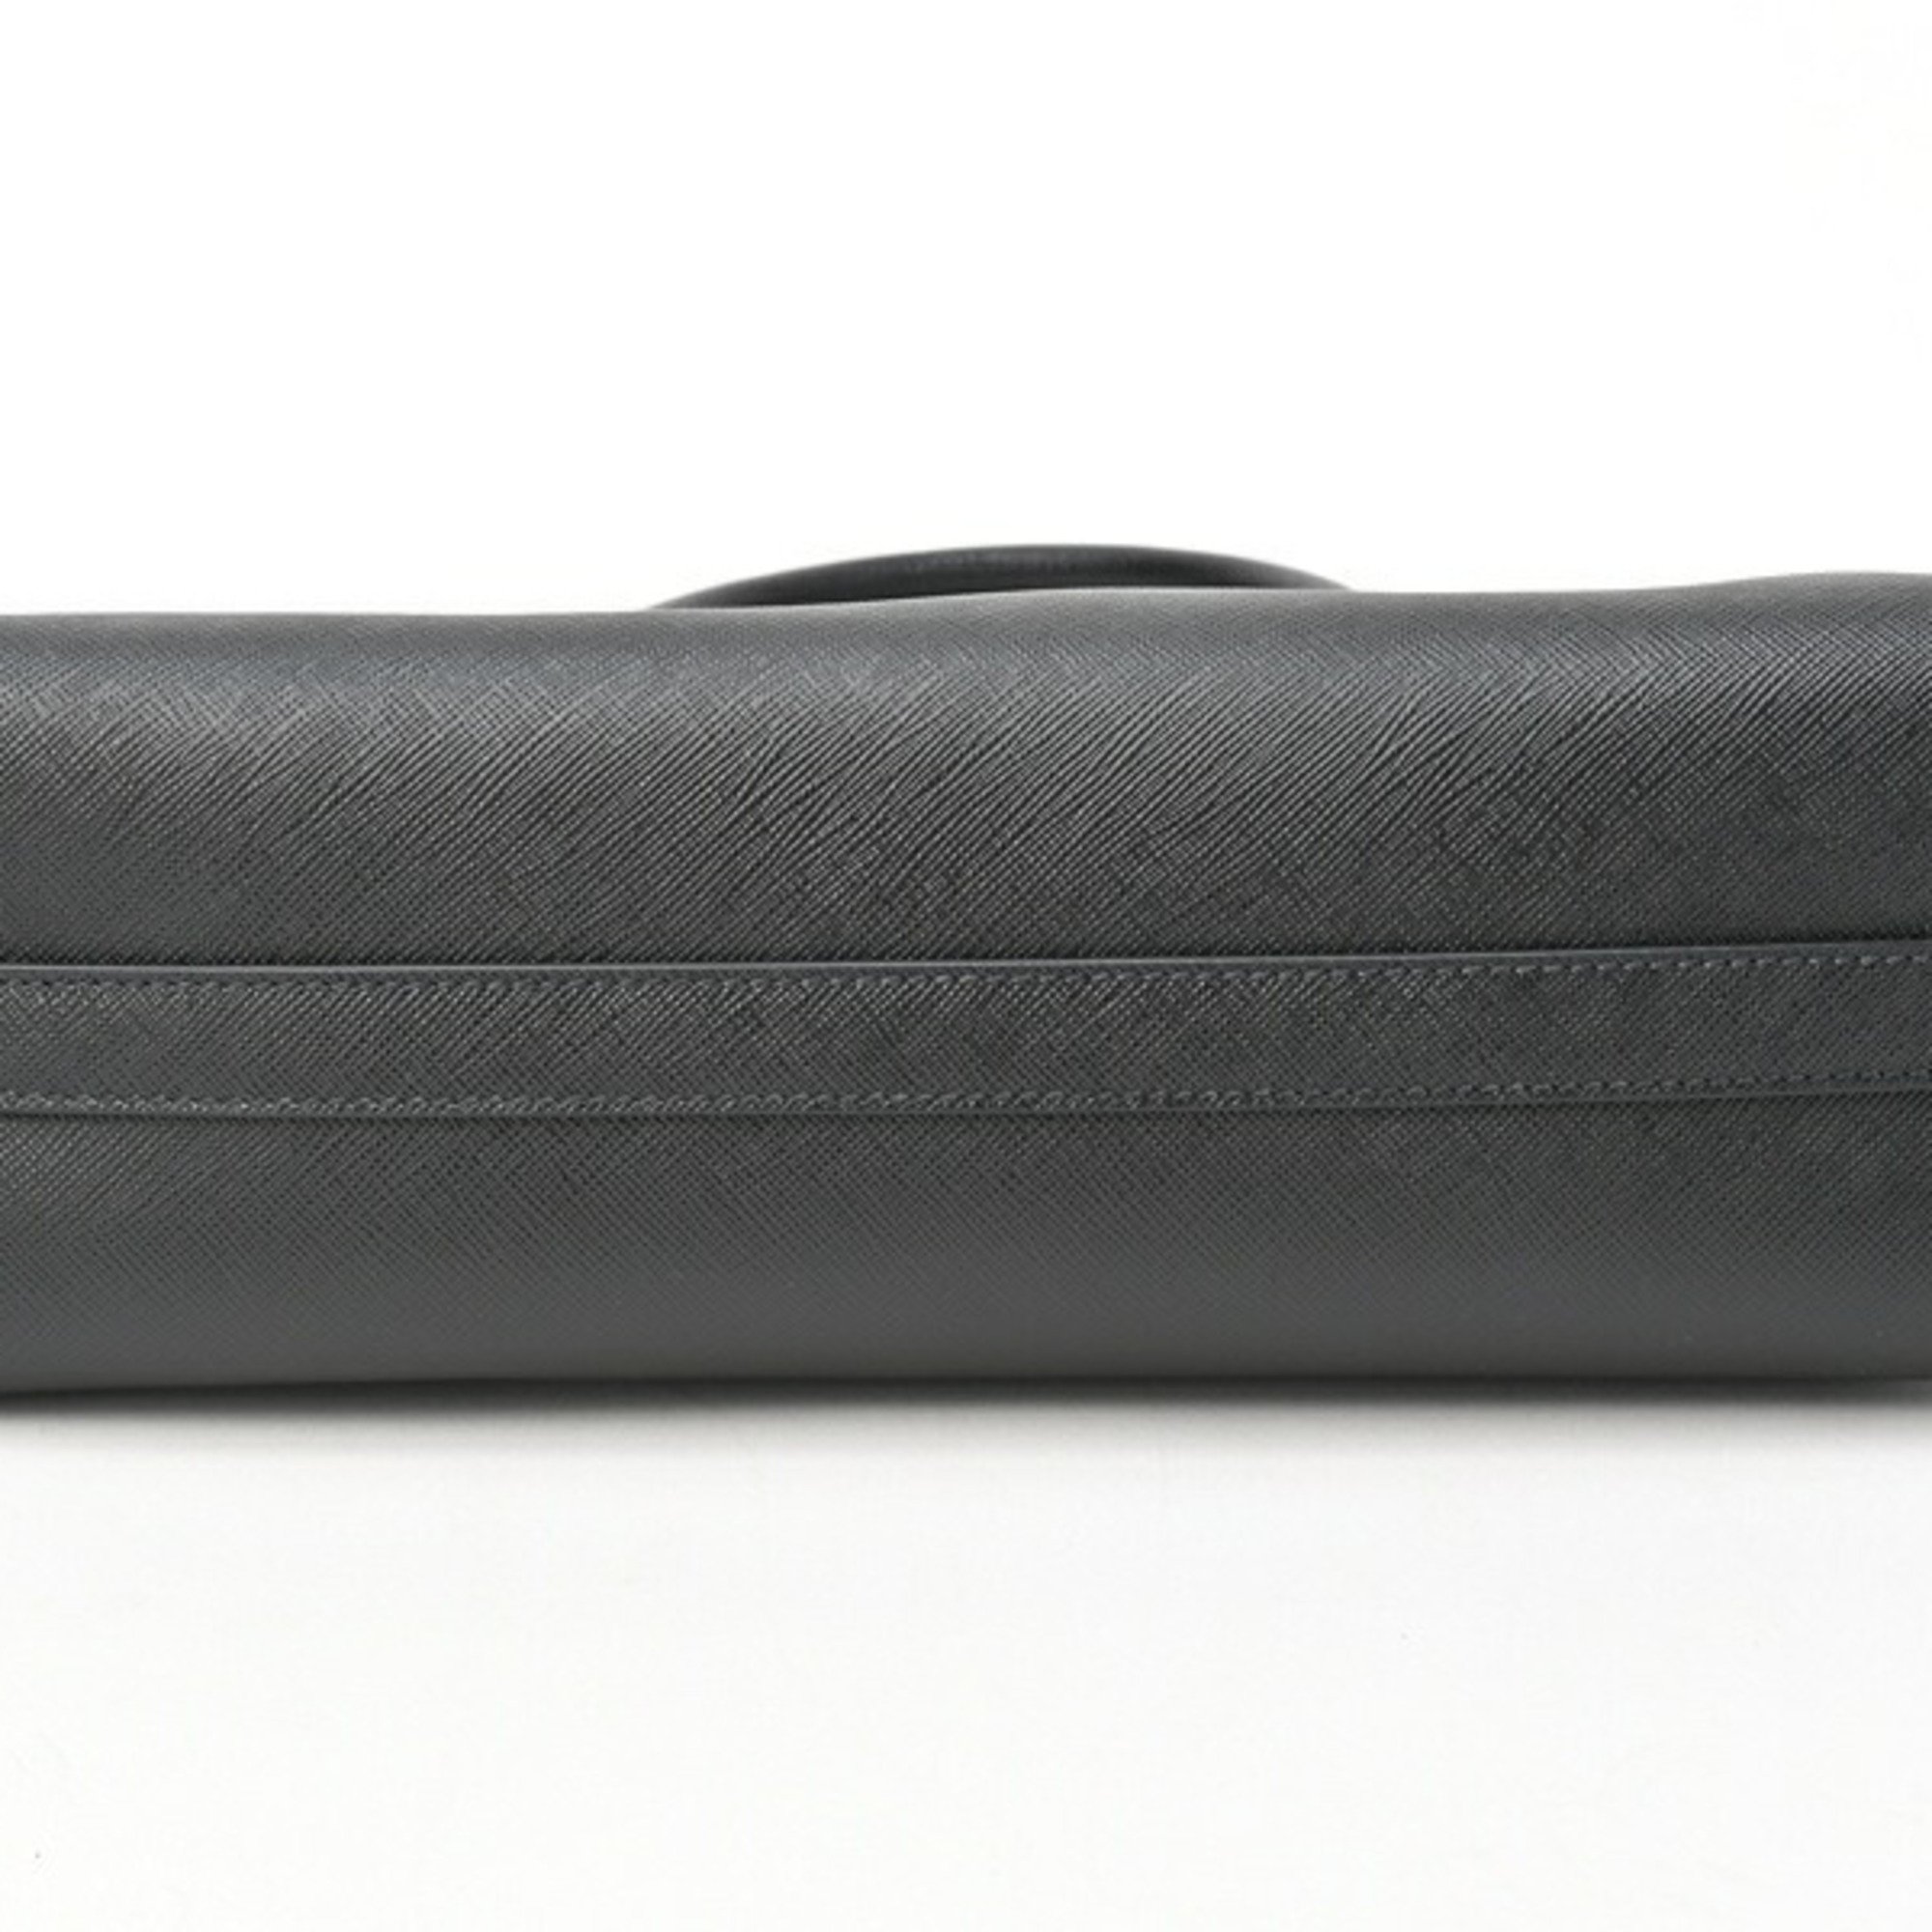 PRADA Medium Saffiano Leather Handbag Tote Bag 1BA337 Black S-155470